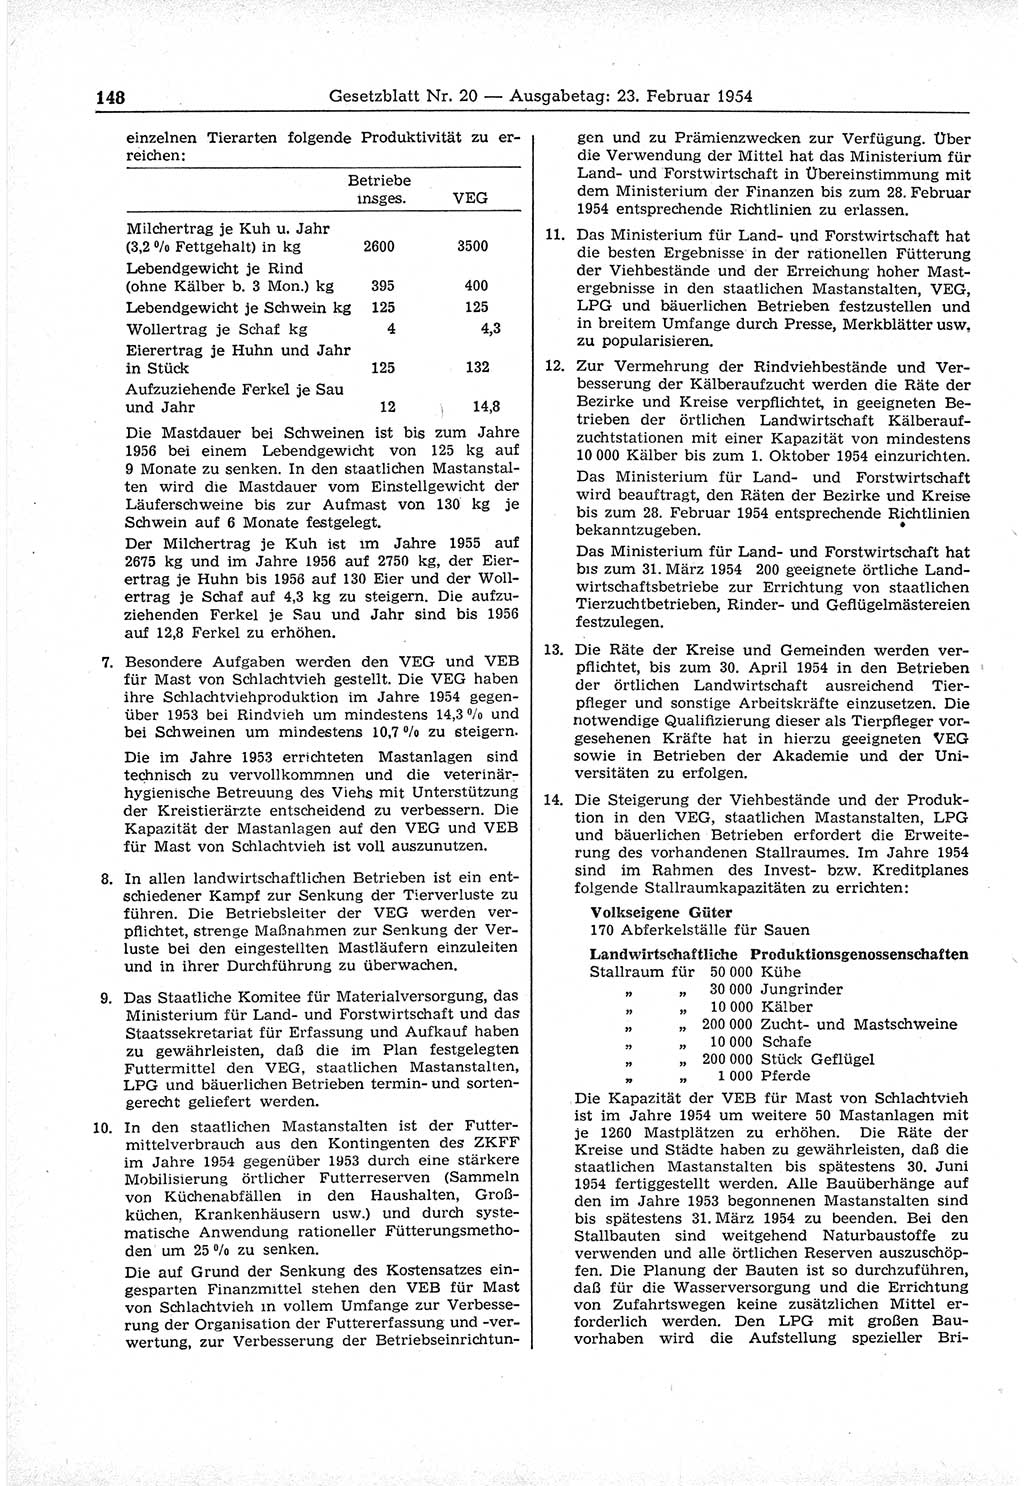 Gesetzblatt (GBl.) der Deutschen Demokratischen Republik (DDR) 1954, Seite 148 (GBl. DDR 1954, S. 148)